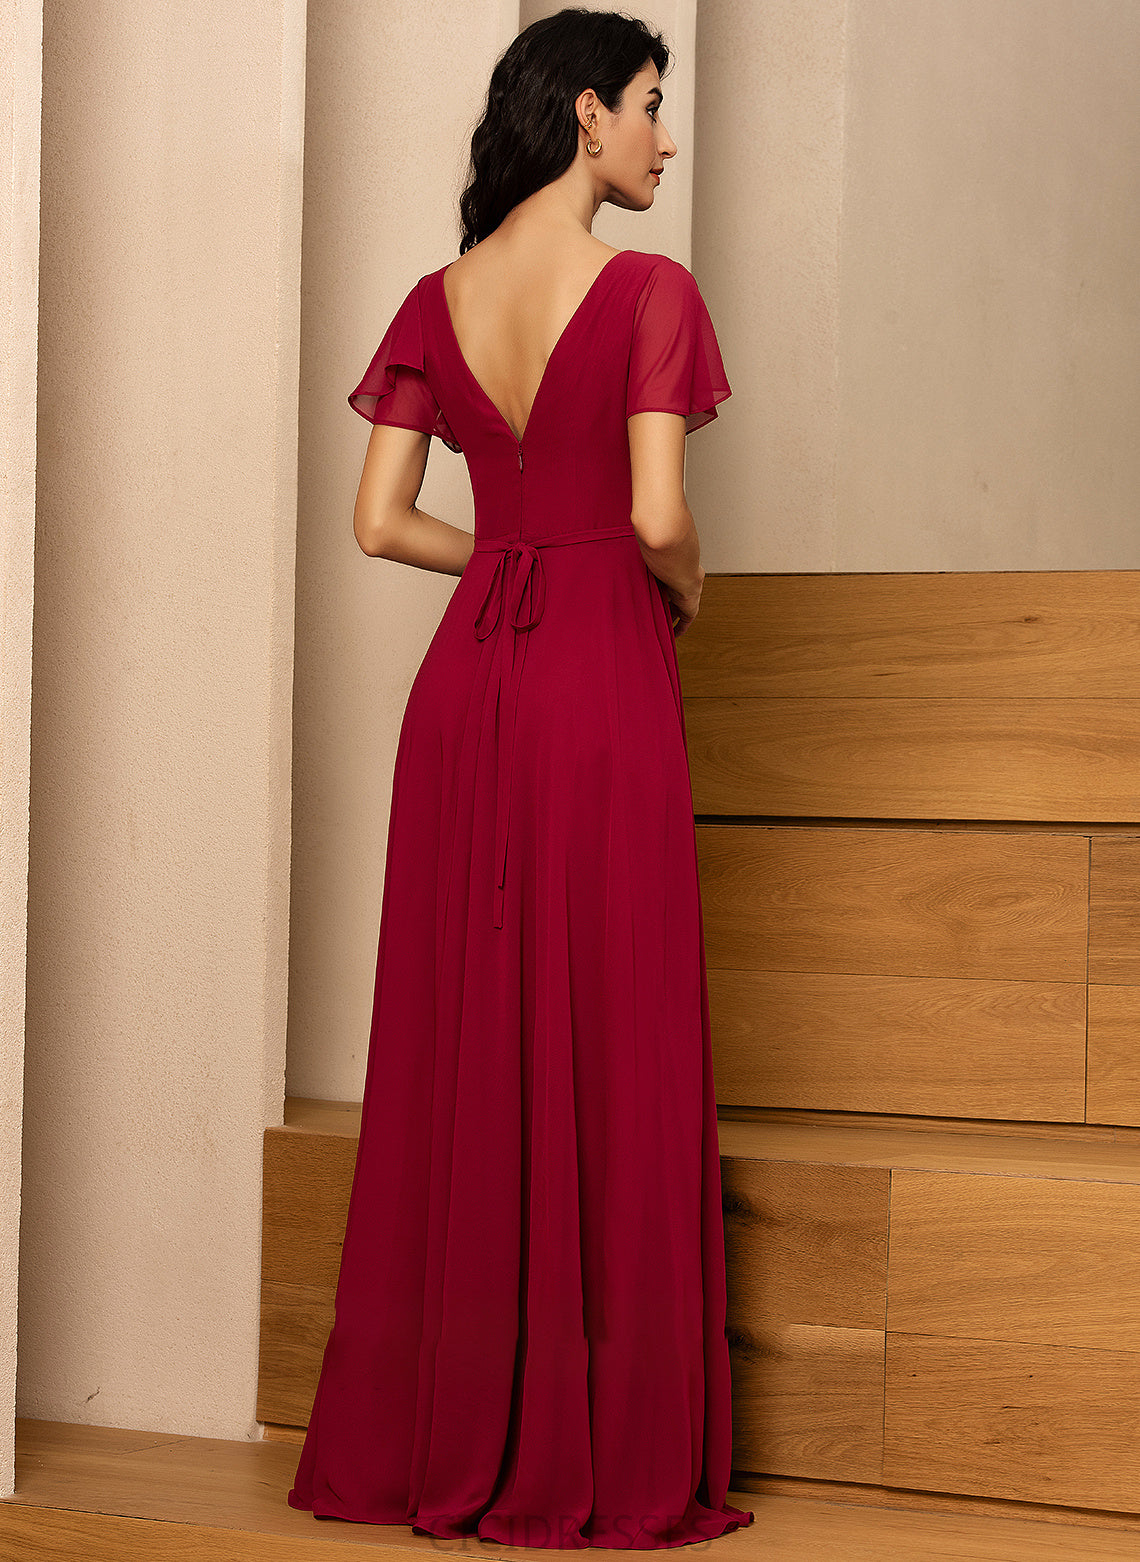 Silhouette A-Line Length Neckline Floor-Length Fabric V-neck Straps Karli Sleeveless Natural Waist Spandex Bridesmaid Dresses